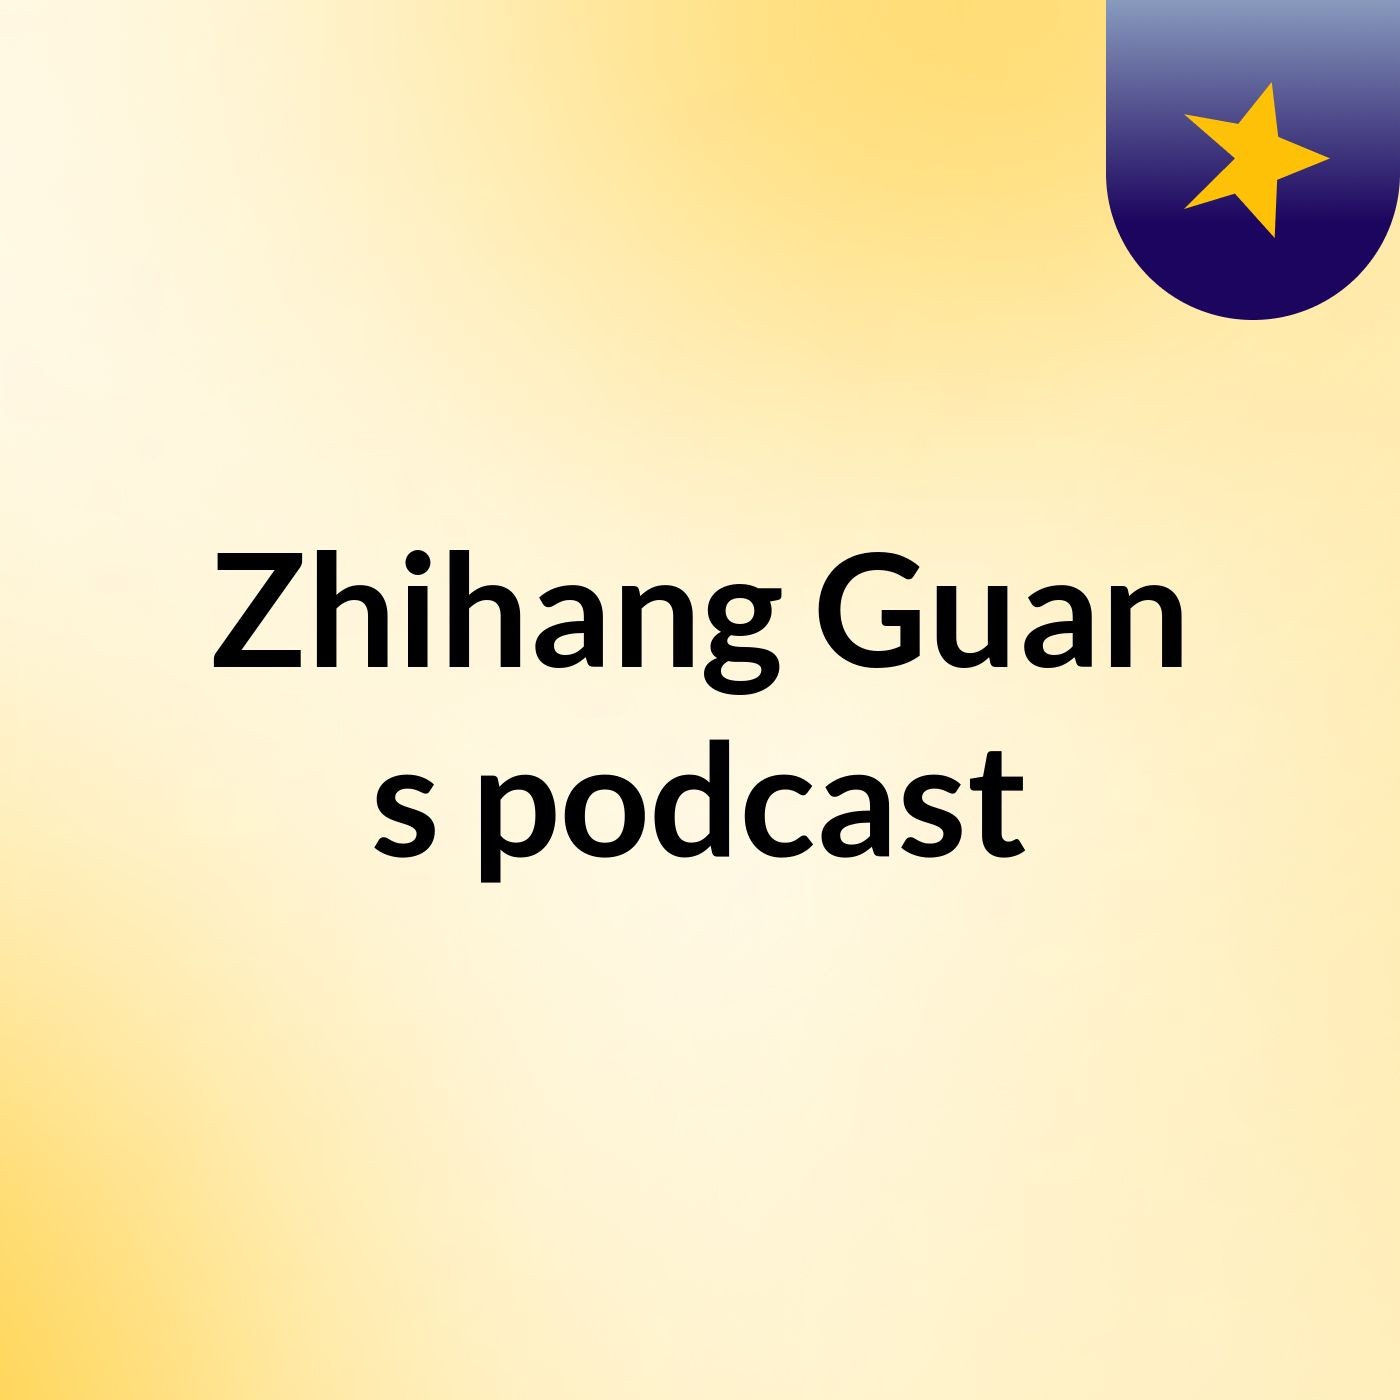 Zhihang Guan's podcast